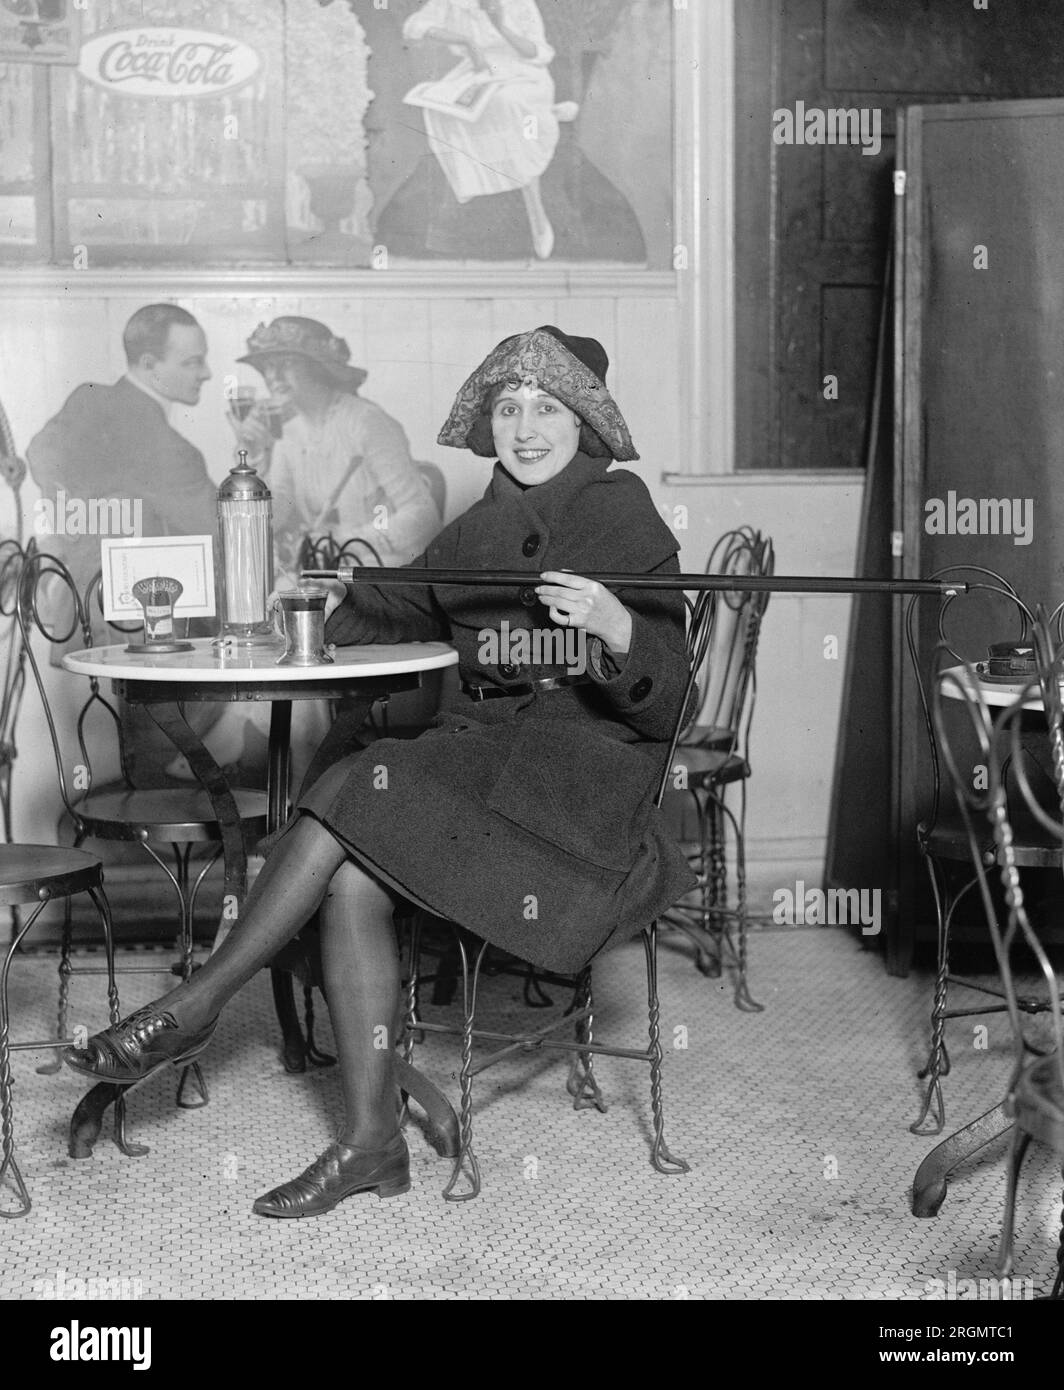 La donna seduta a un tavolo con bibite gassate versa alcol in una tazza da una canna da zucchero, durante il proibizionismo; con una grande pubblicità Coca-Cola sul muro ca. 1922 Foto Stock